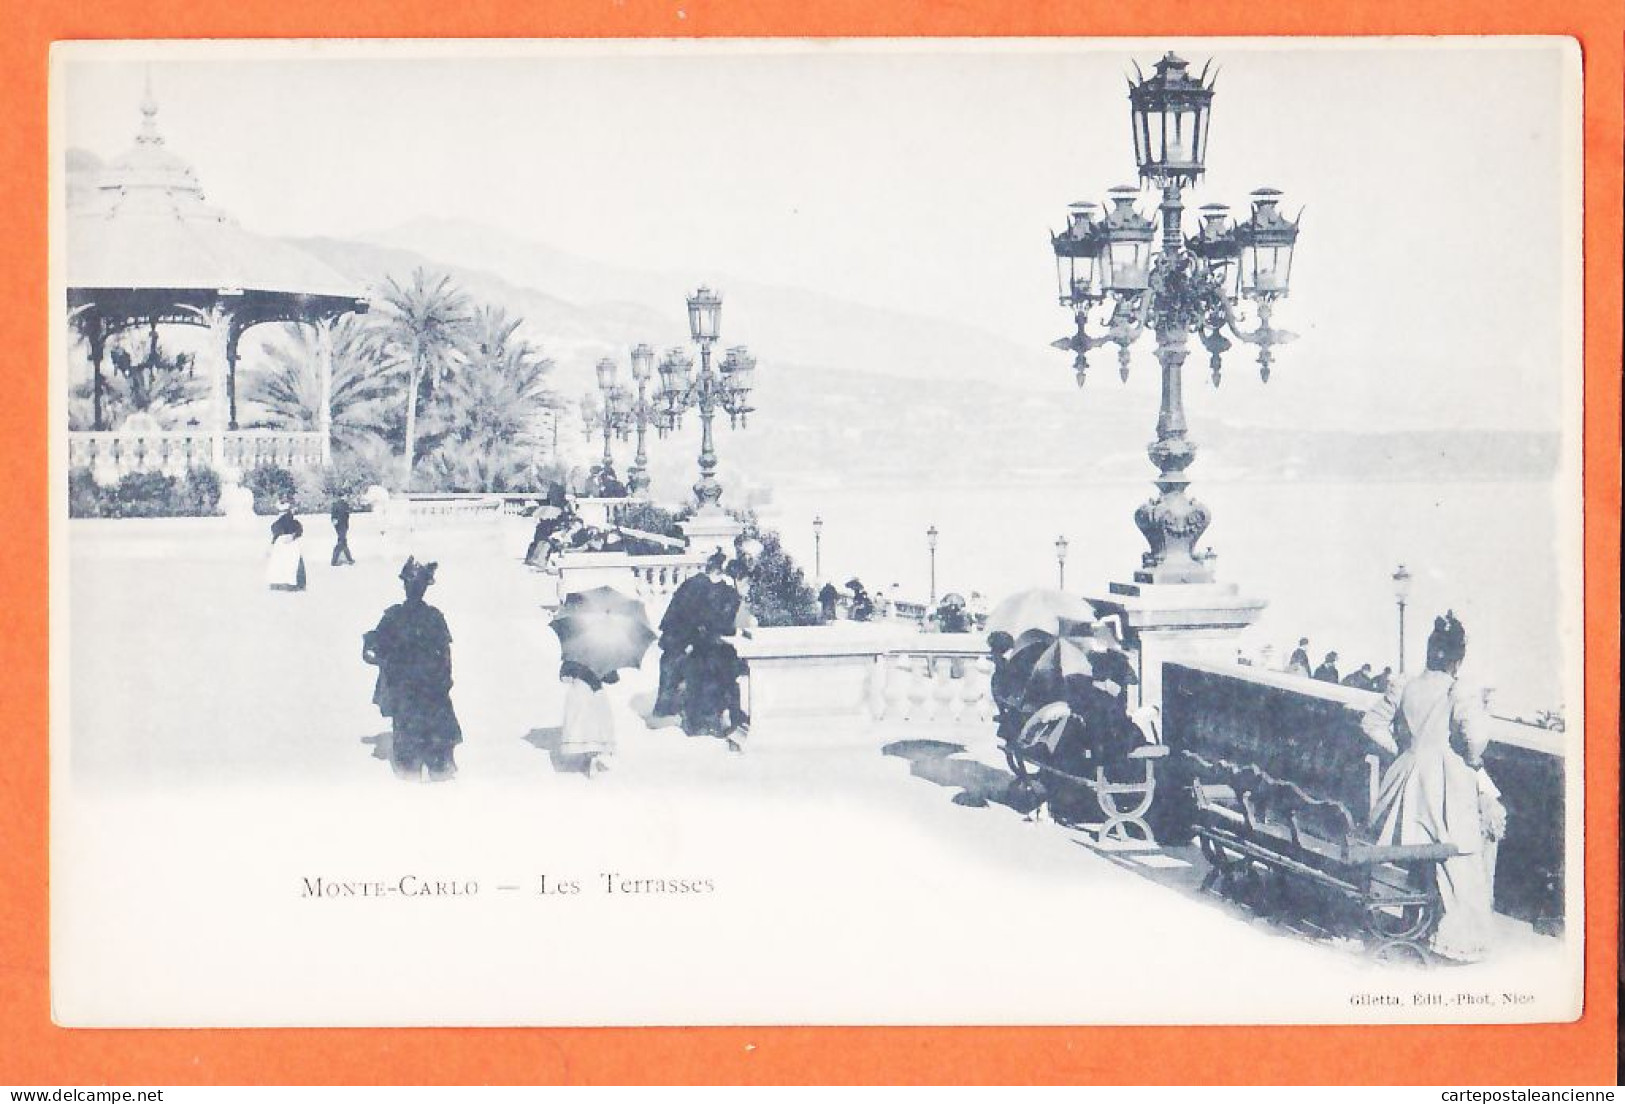 28816 / ⭐ MONTE-CARLO Monaco Les Terrasses 1900s GILETTA Photo Nice - Terraces